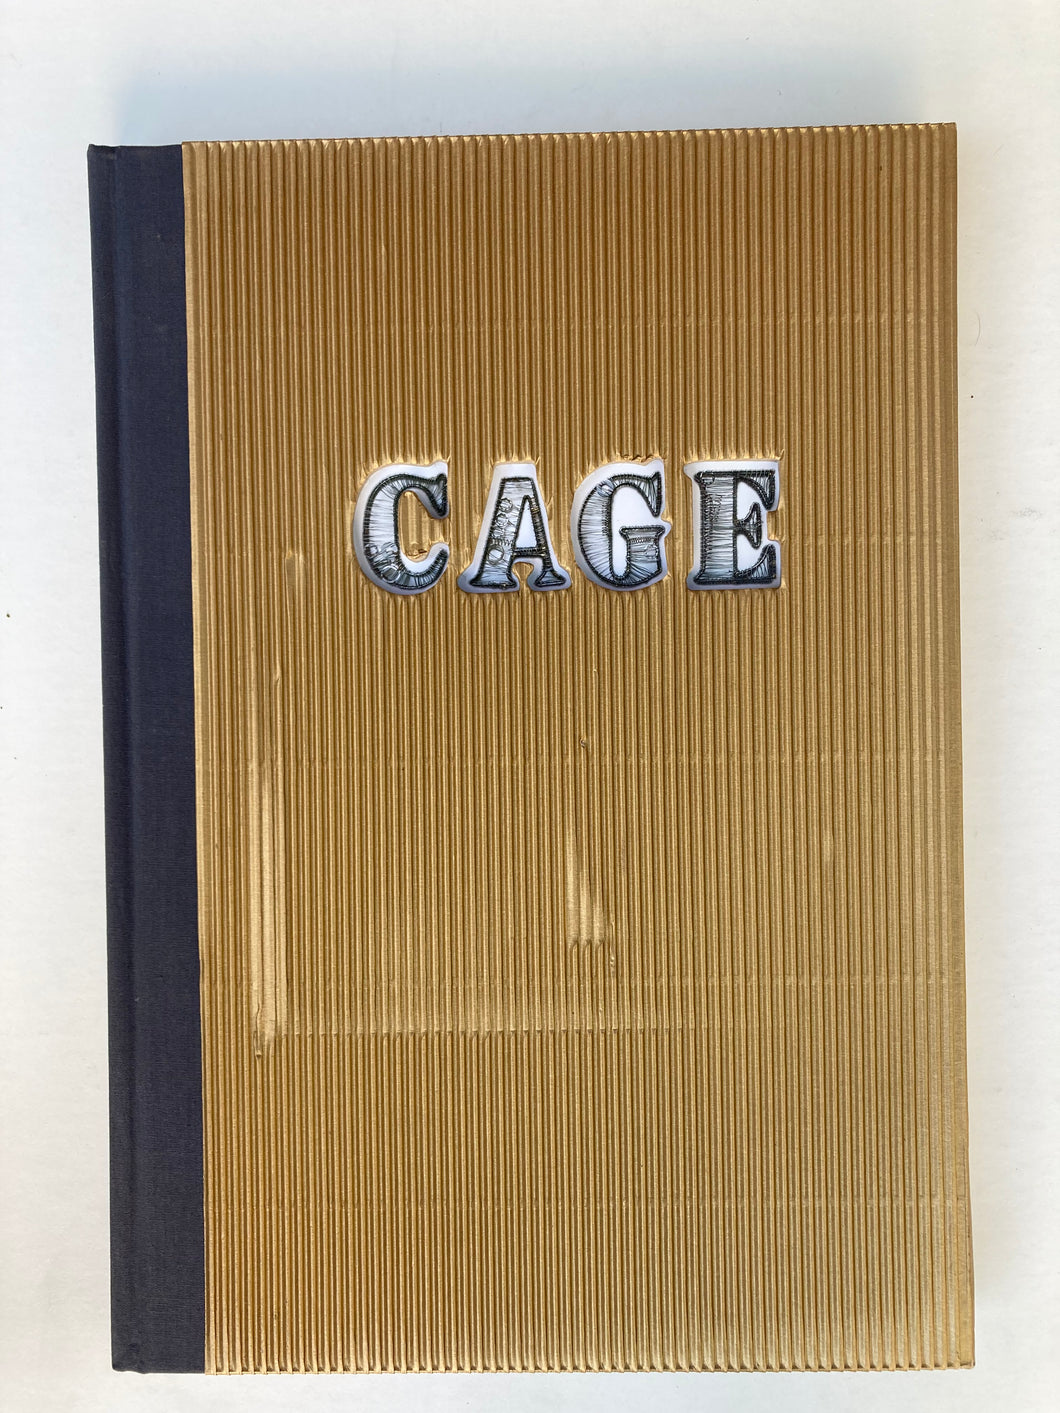 Betye Saar: Cage